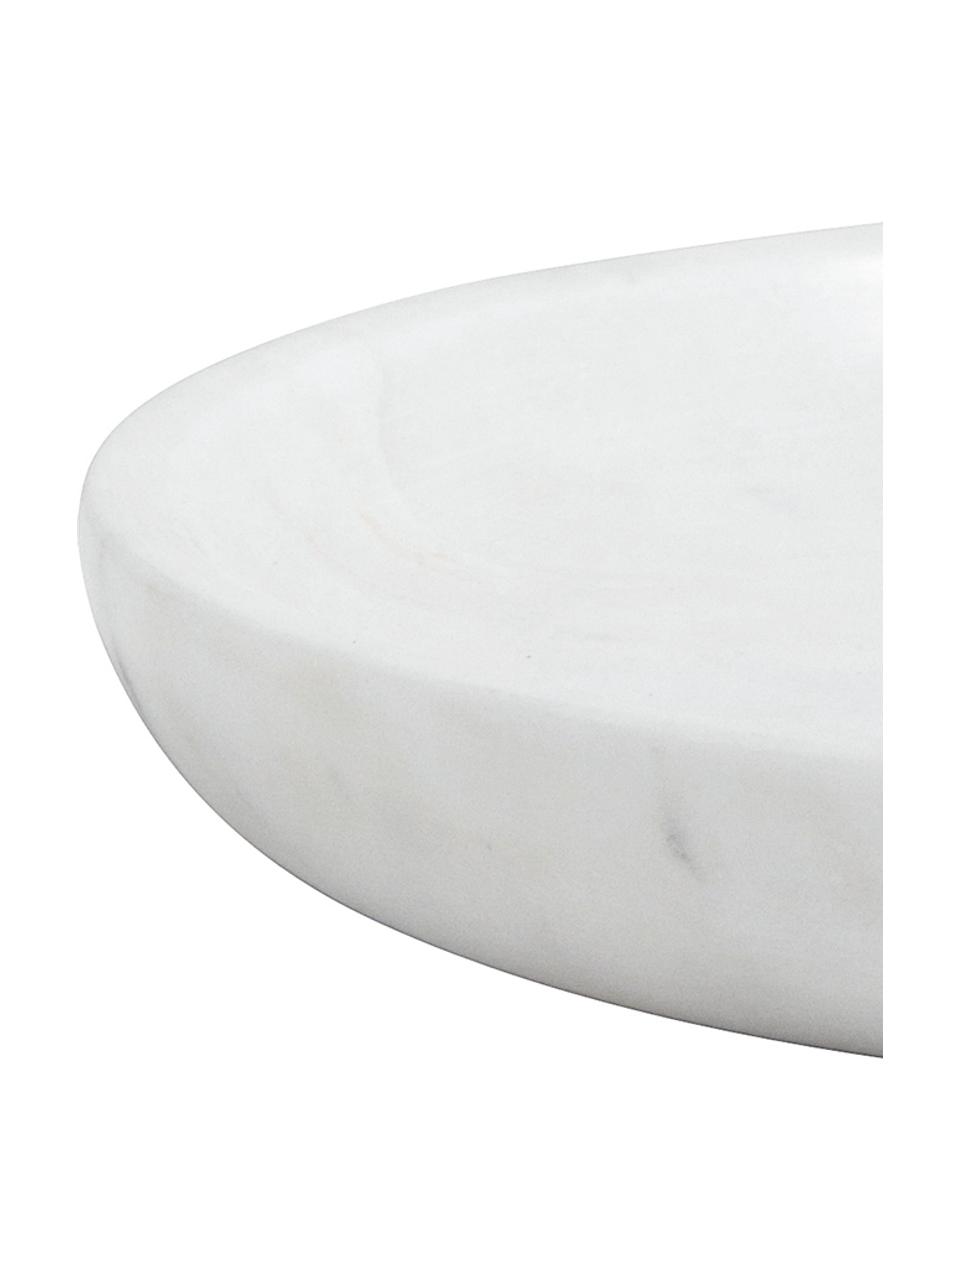 Petit plateau décoratif marbre blanc Lorka, Marbre, Blanc, marbré, Ø 17 cm